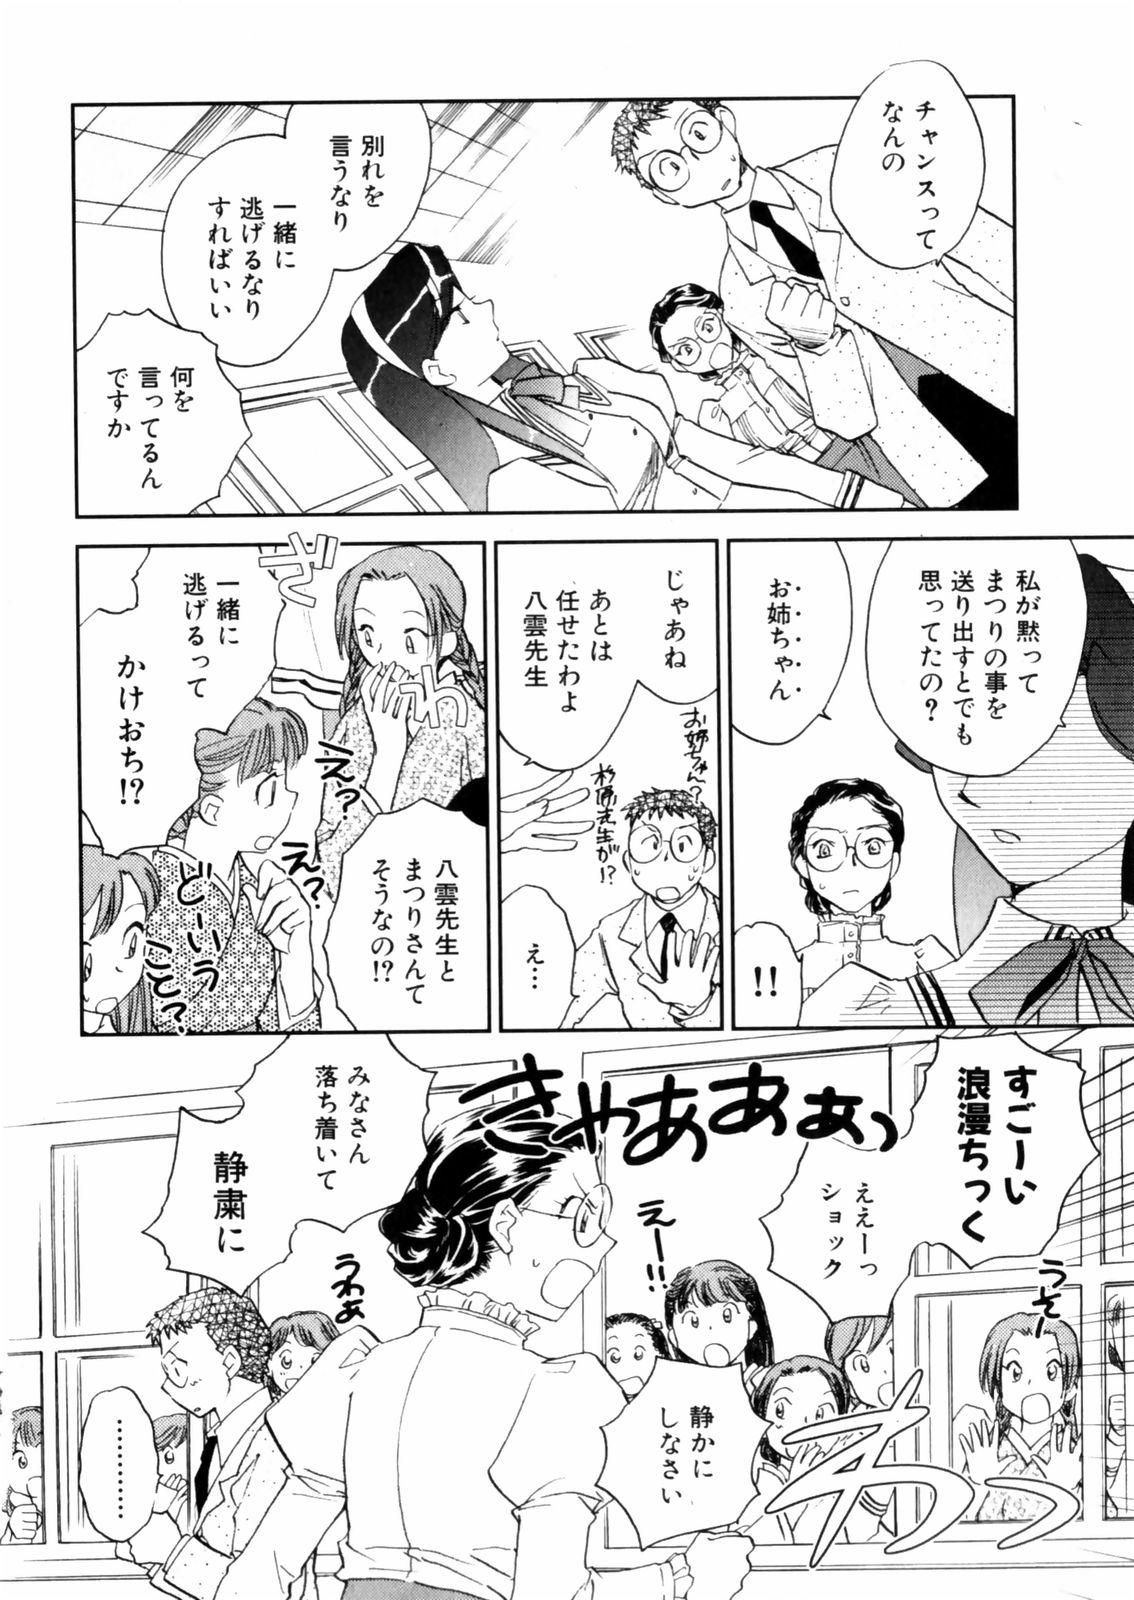 [Okano Ahiru] Hanasake ! Otome Juku (Otome Private Tutoring School) Vol.2 71